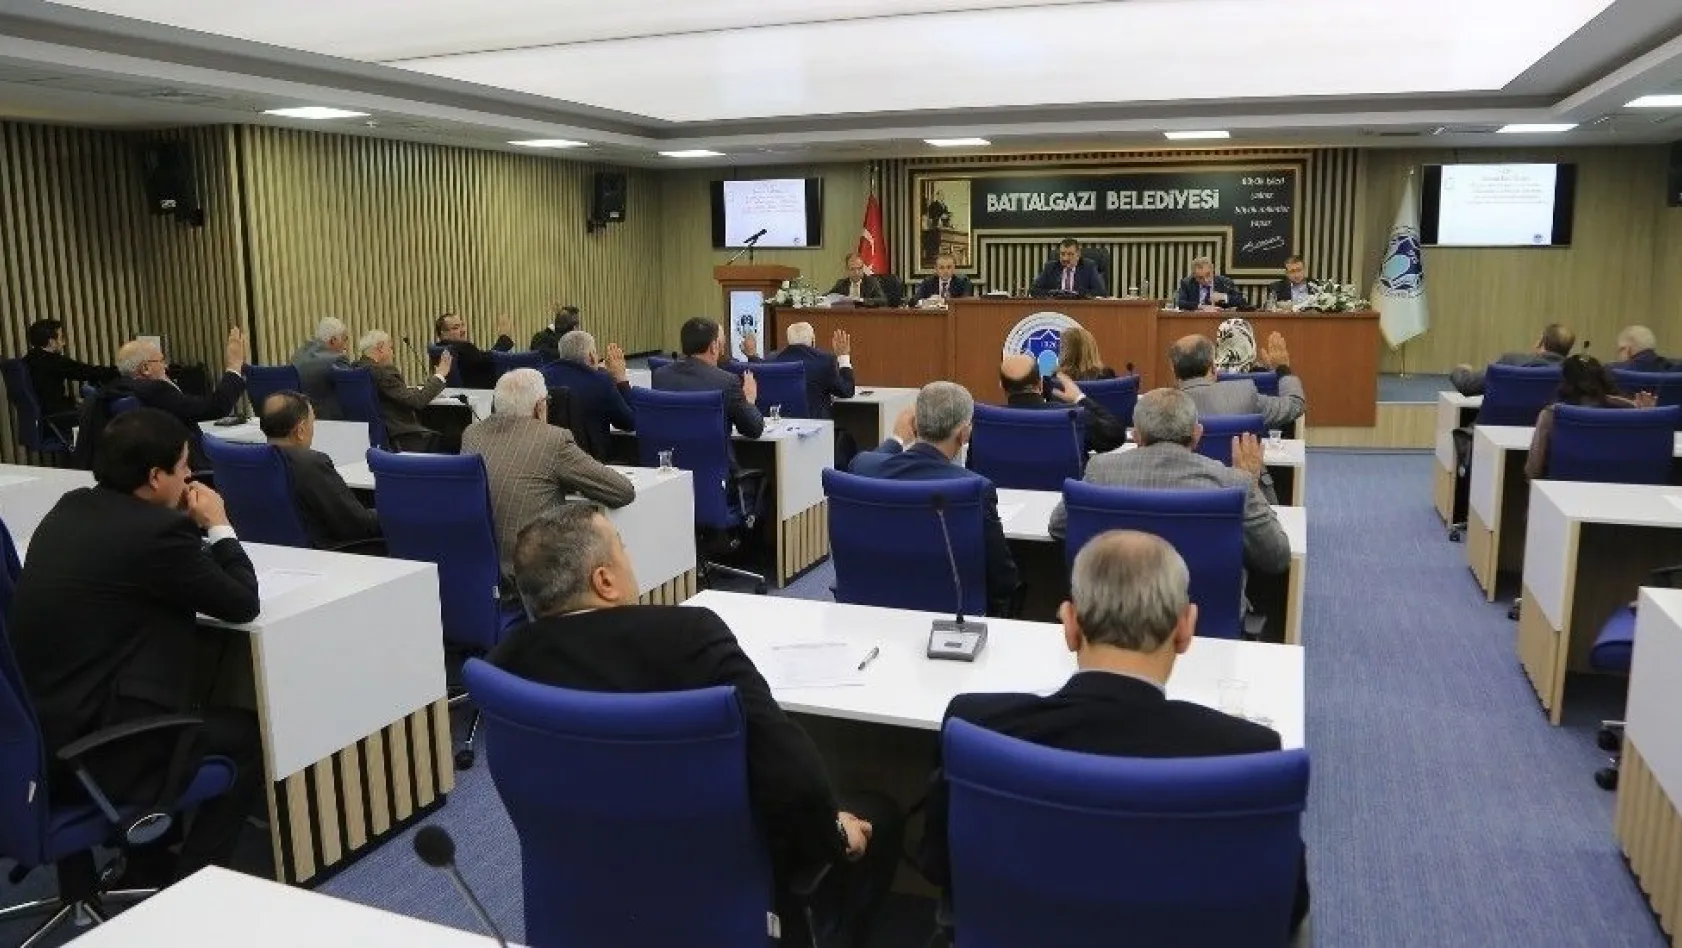 Battalgazi Belediye Meclisi 2017 yılının son toplantısını gerçekleştirdi
